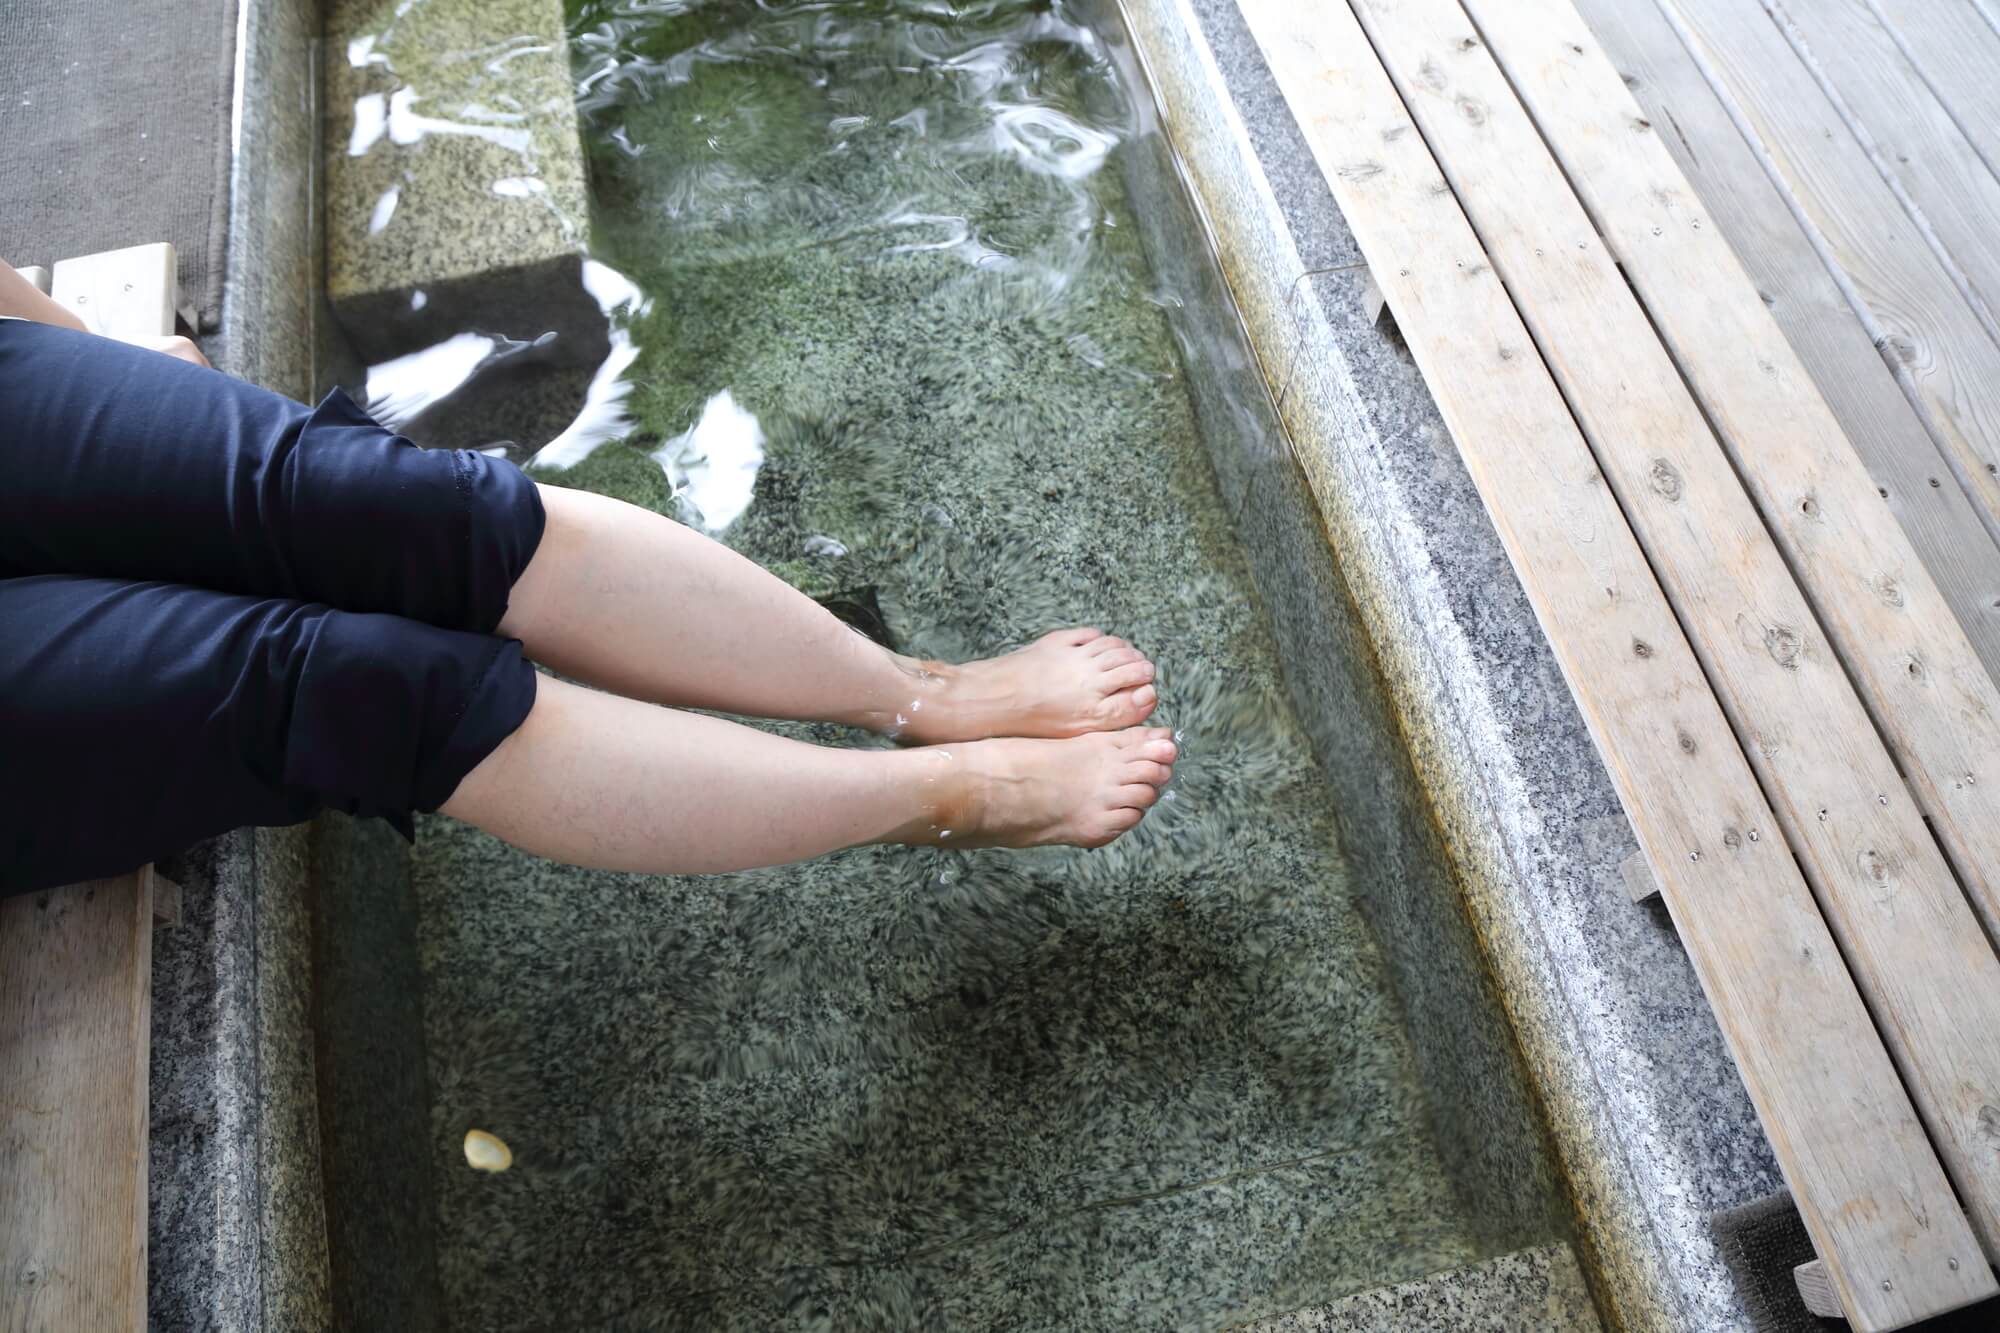 【らくだ倶楽部様】足湯でほっと一息。伊香保温泉石段街の休憩スポットを紹介します。